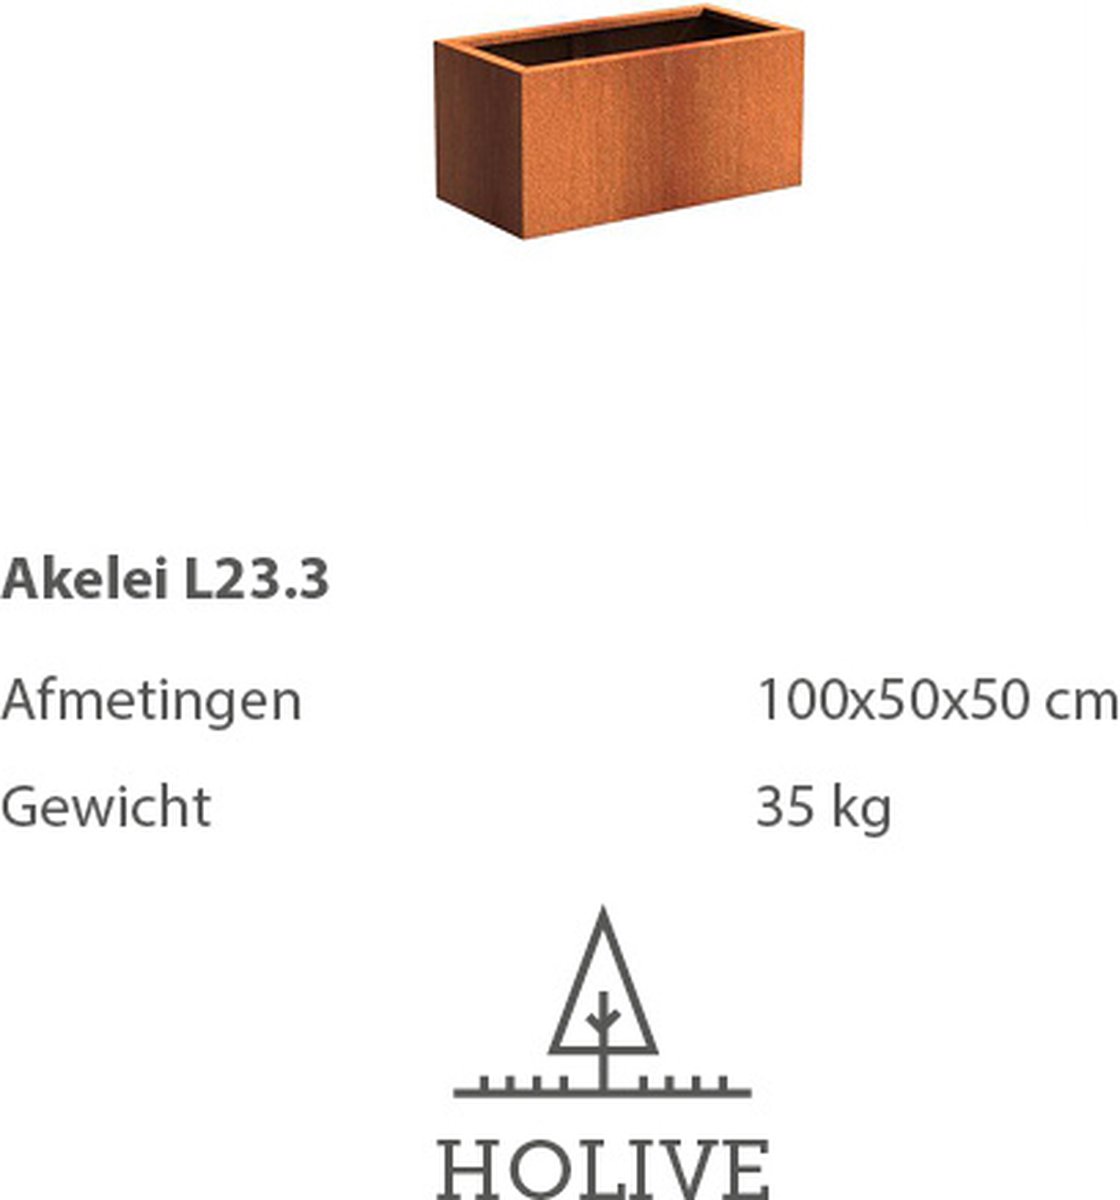 Cortenstaal Akelei L23.3 Rechthoek 100x50x50 cm. Plantenbak